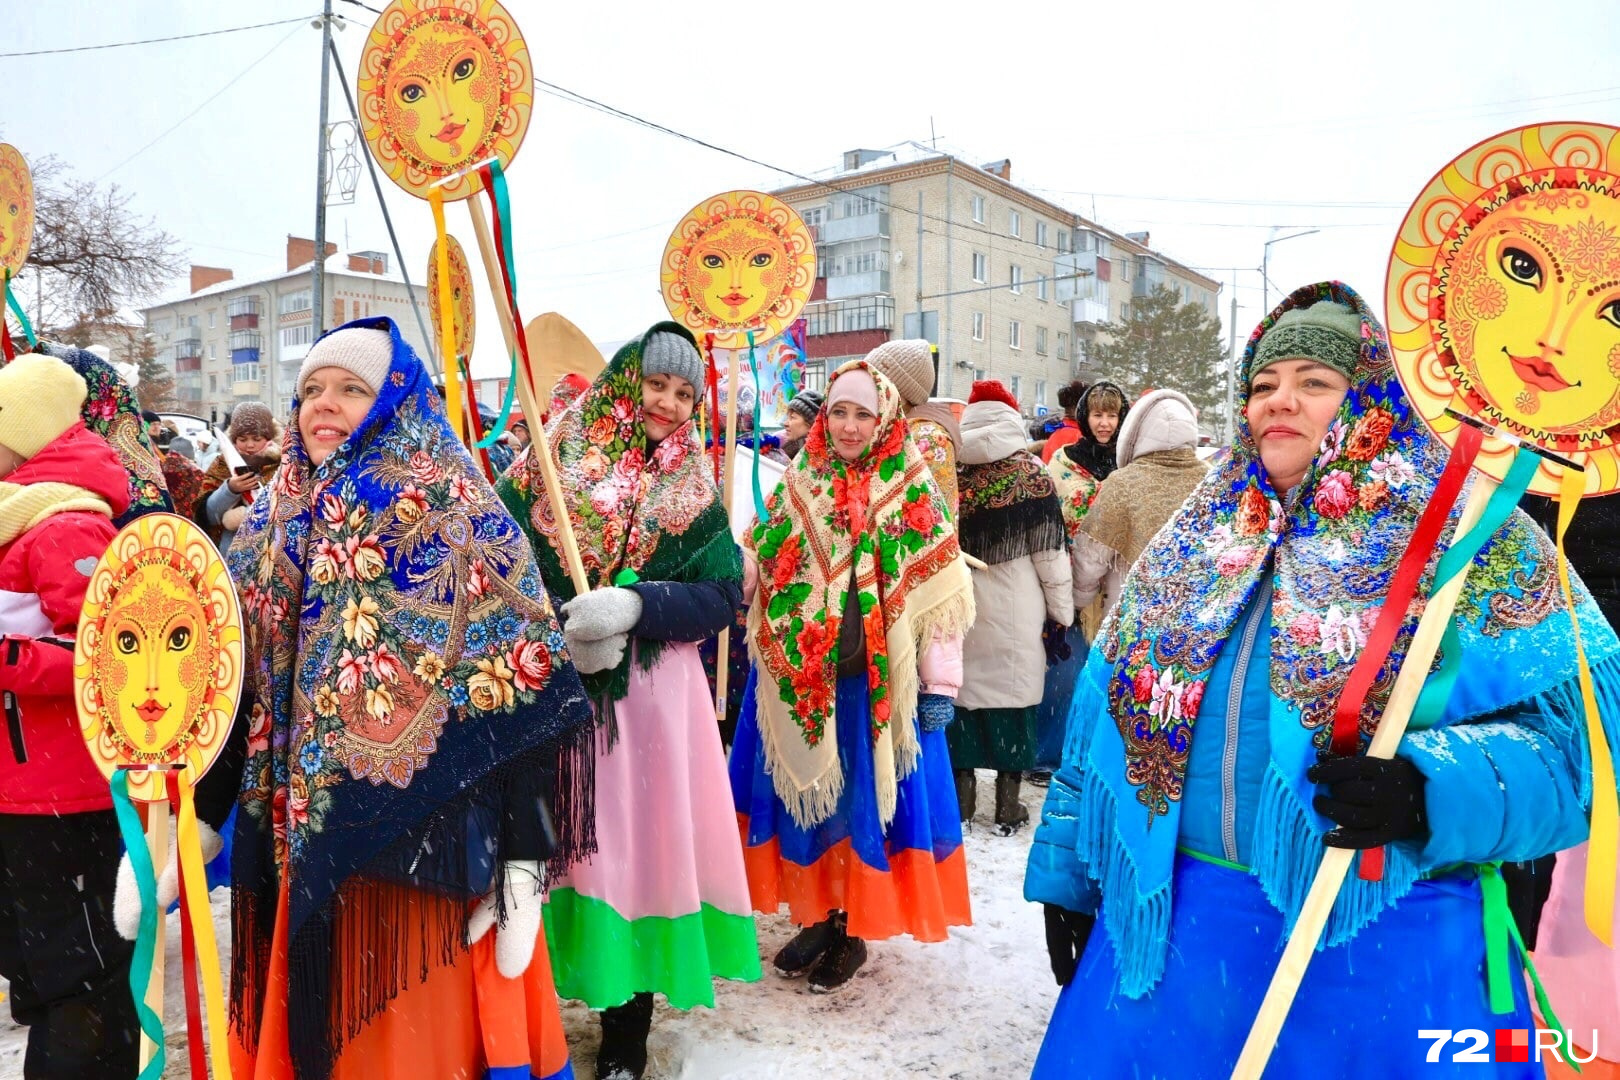 Цветные яркие платки придавали женщинам особый шарм и напоминали о славянских традициях